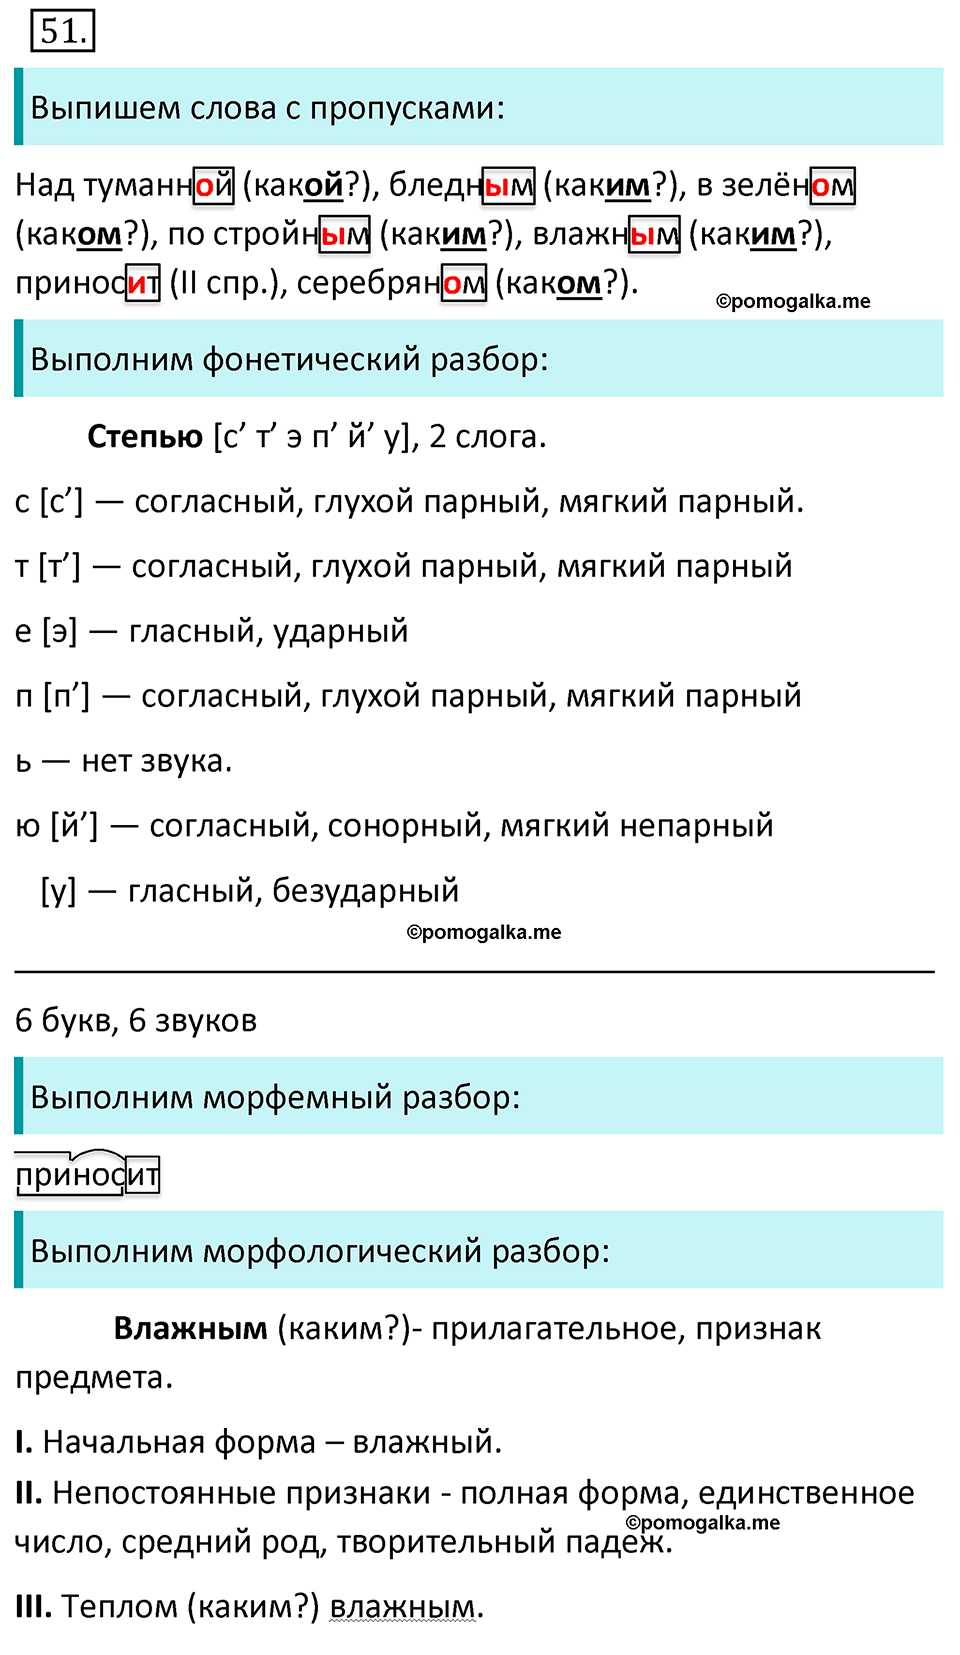 Ответы к учебнику русский язык 6 класс 2 часть Ладыженская, Баранов: